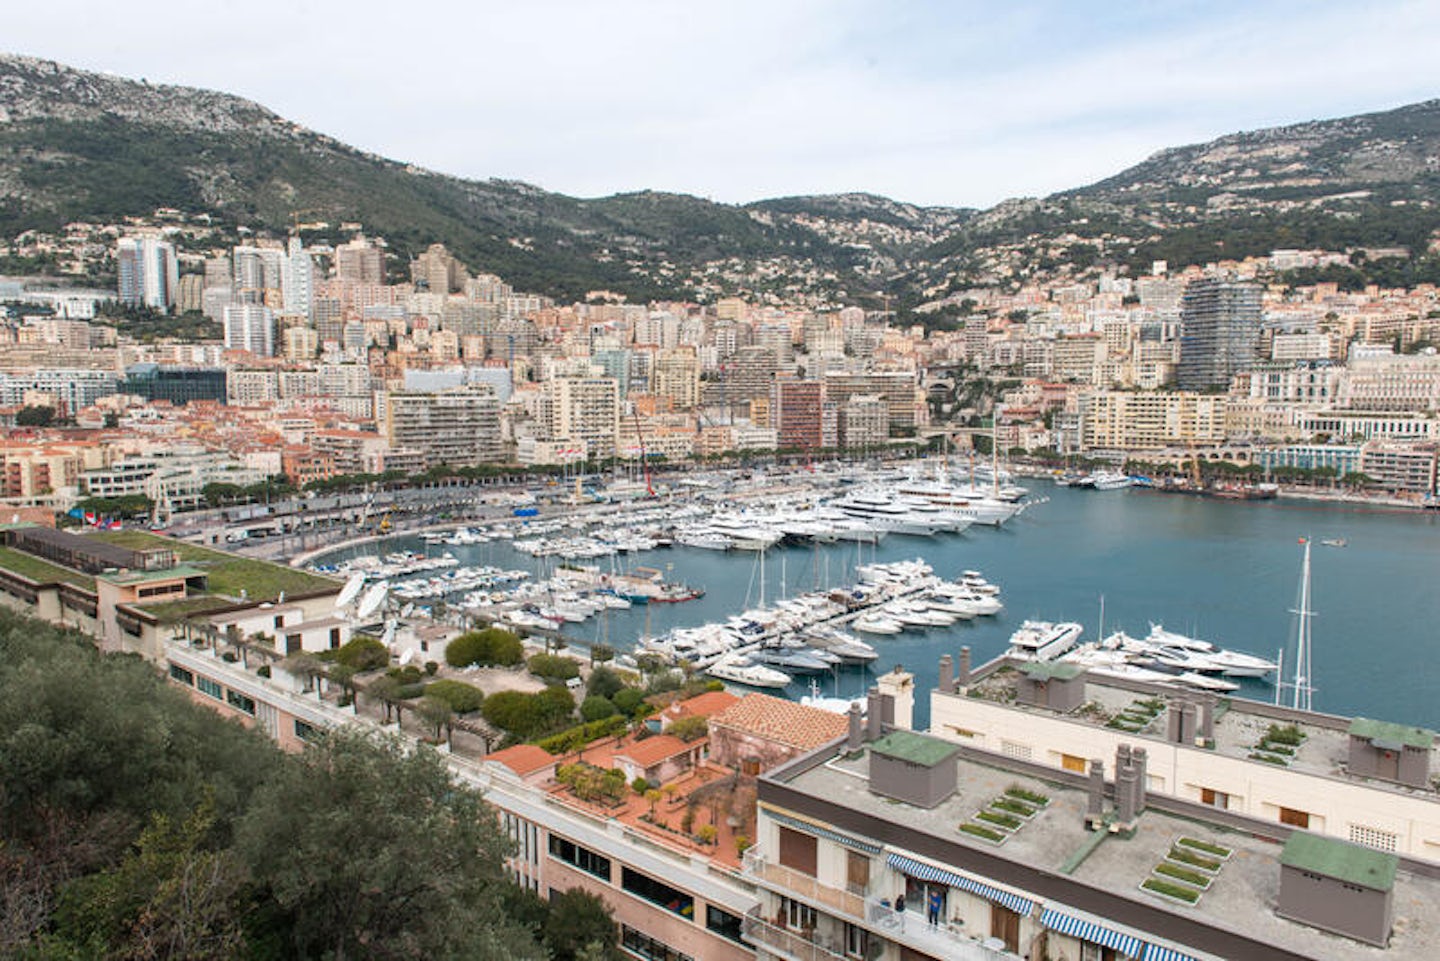 Monte Carlo (Monaco) Cruise Port